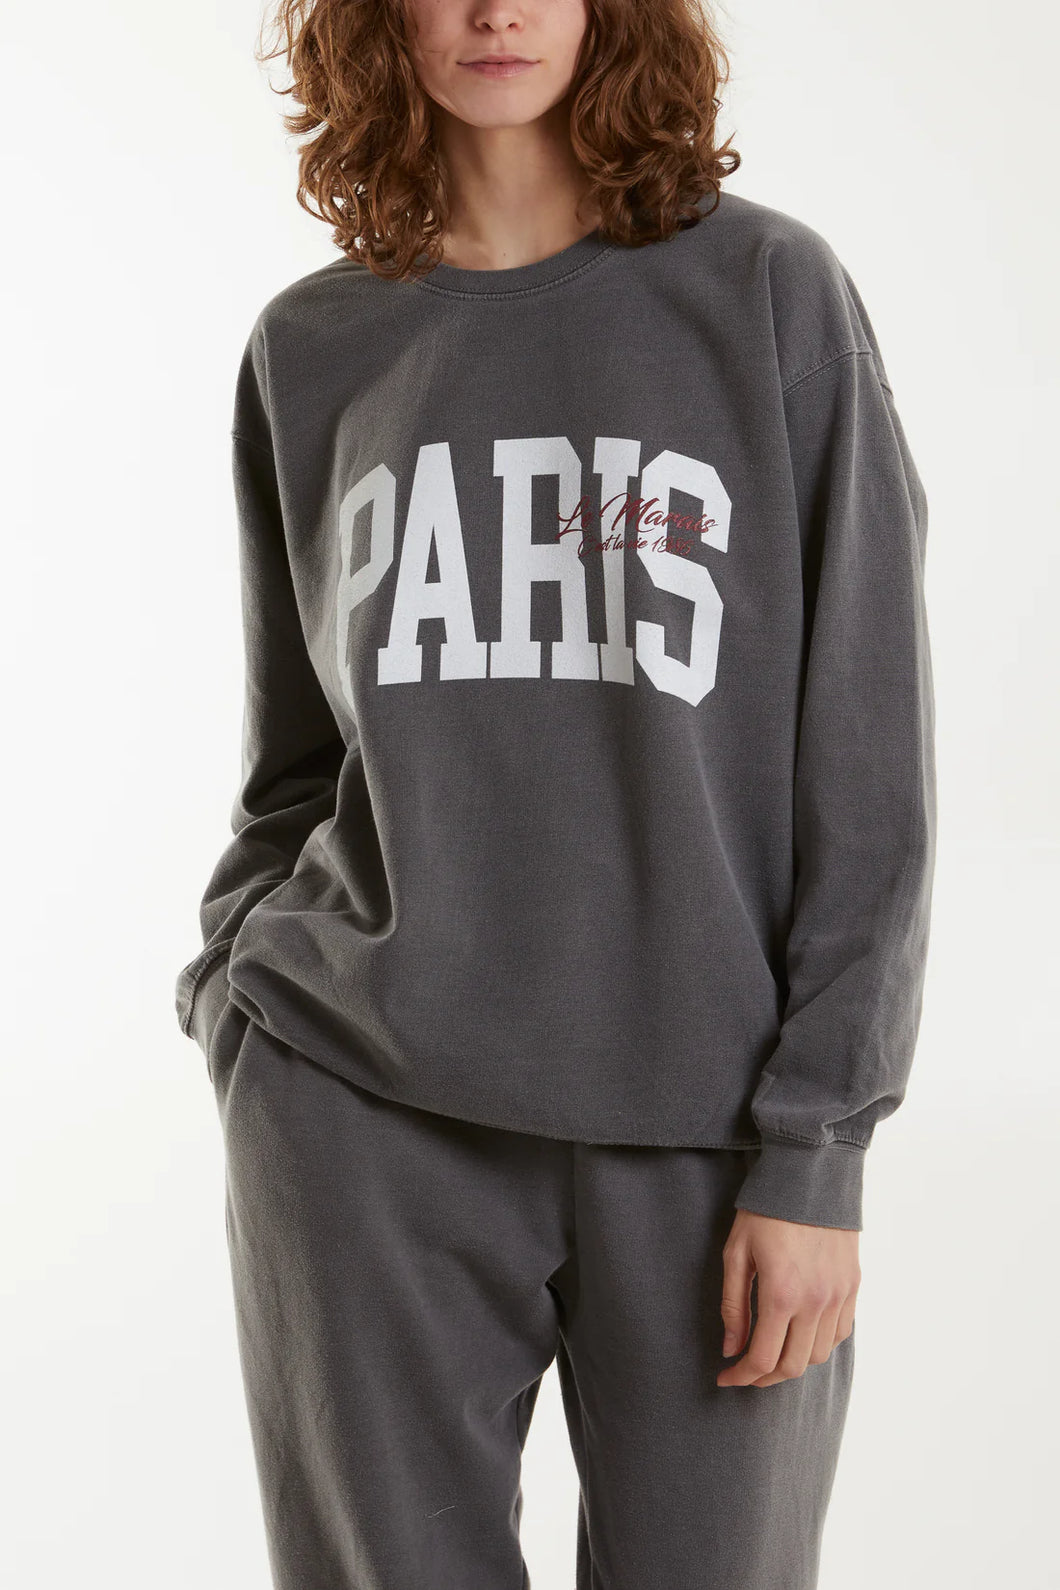 Paris stonewashed sweatshirt